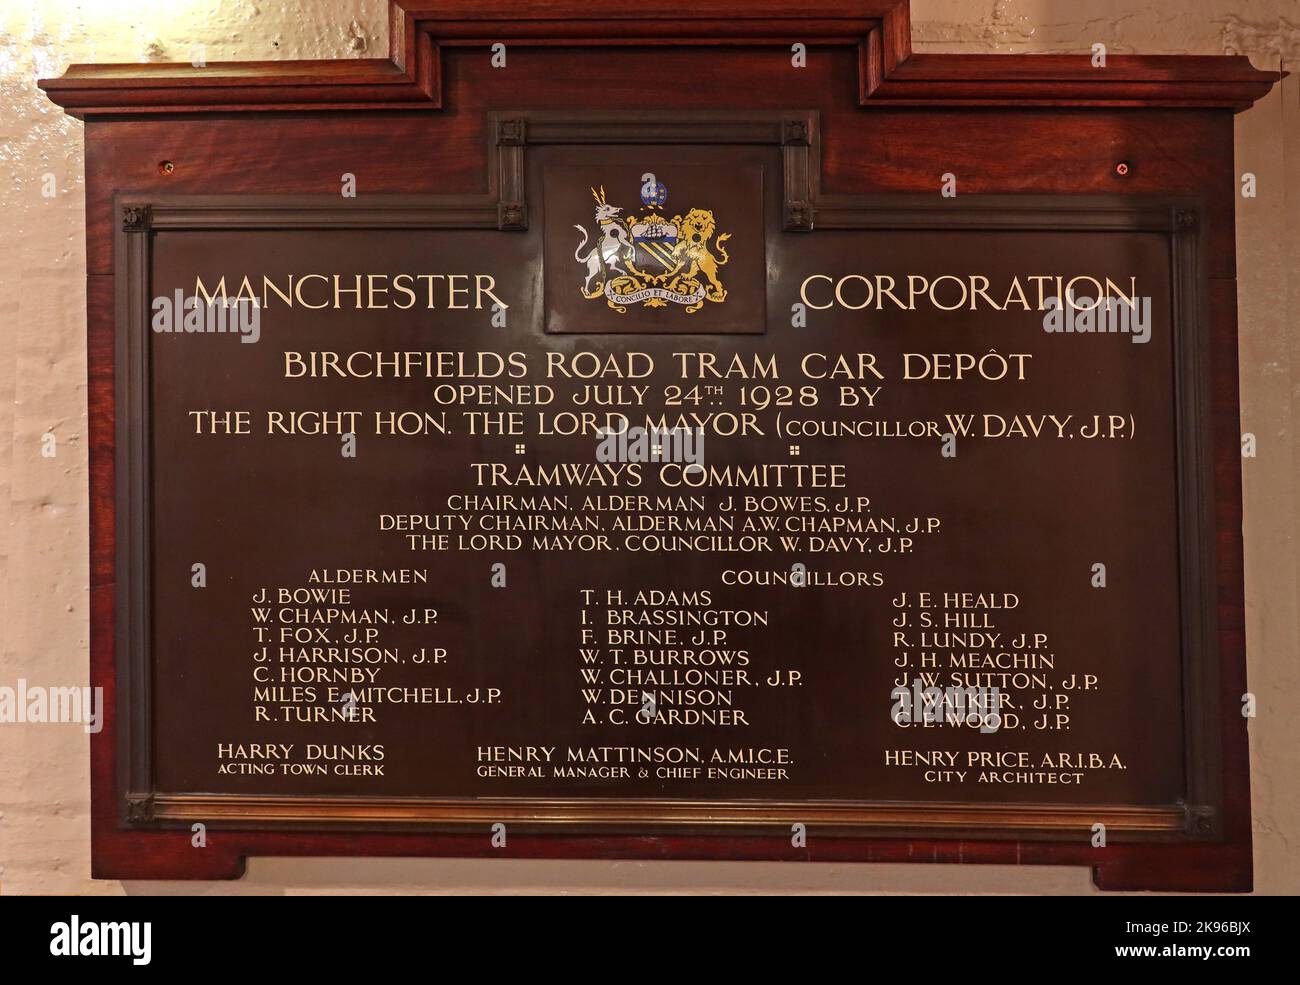 Manchester Corporation, plaque de dépôt de tramway Birchfields Road, conseiller Davy, alderman bowes JP, Comité des tramways Banque D'Images